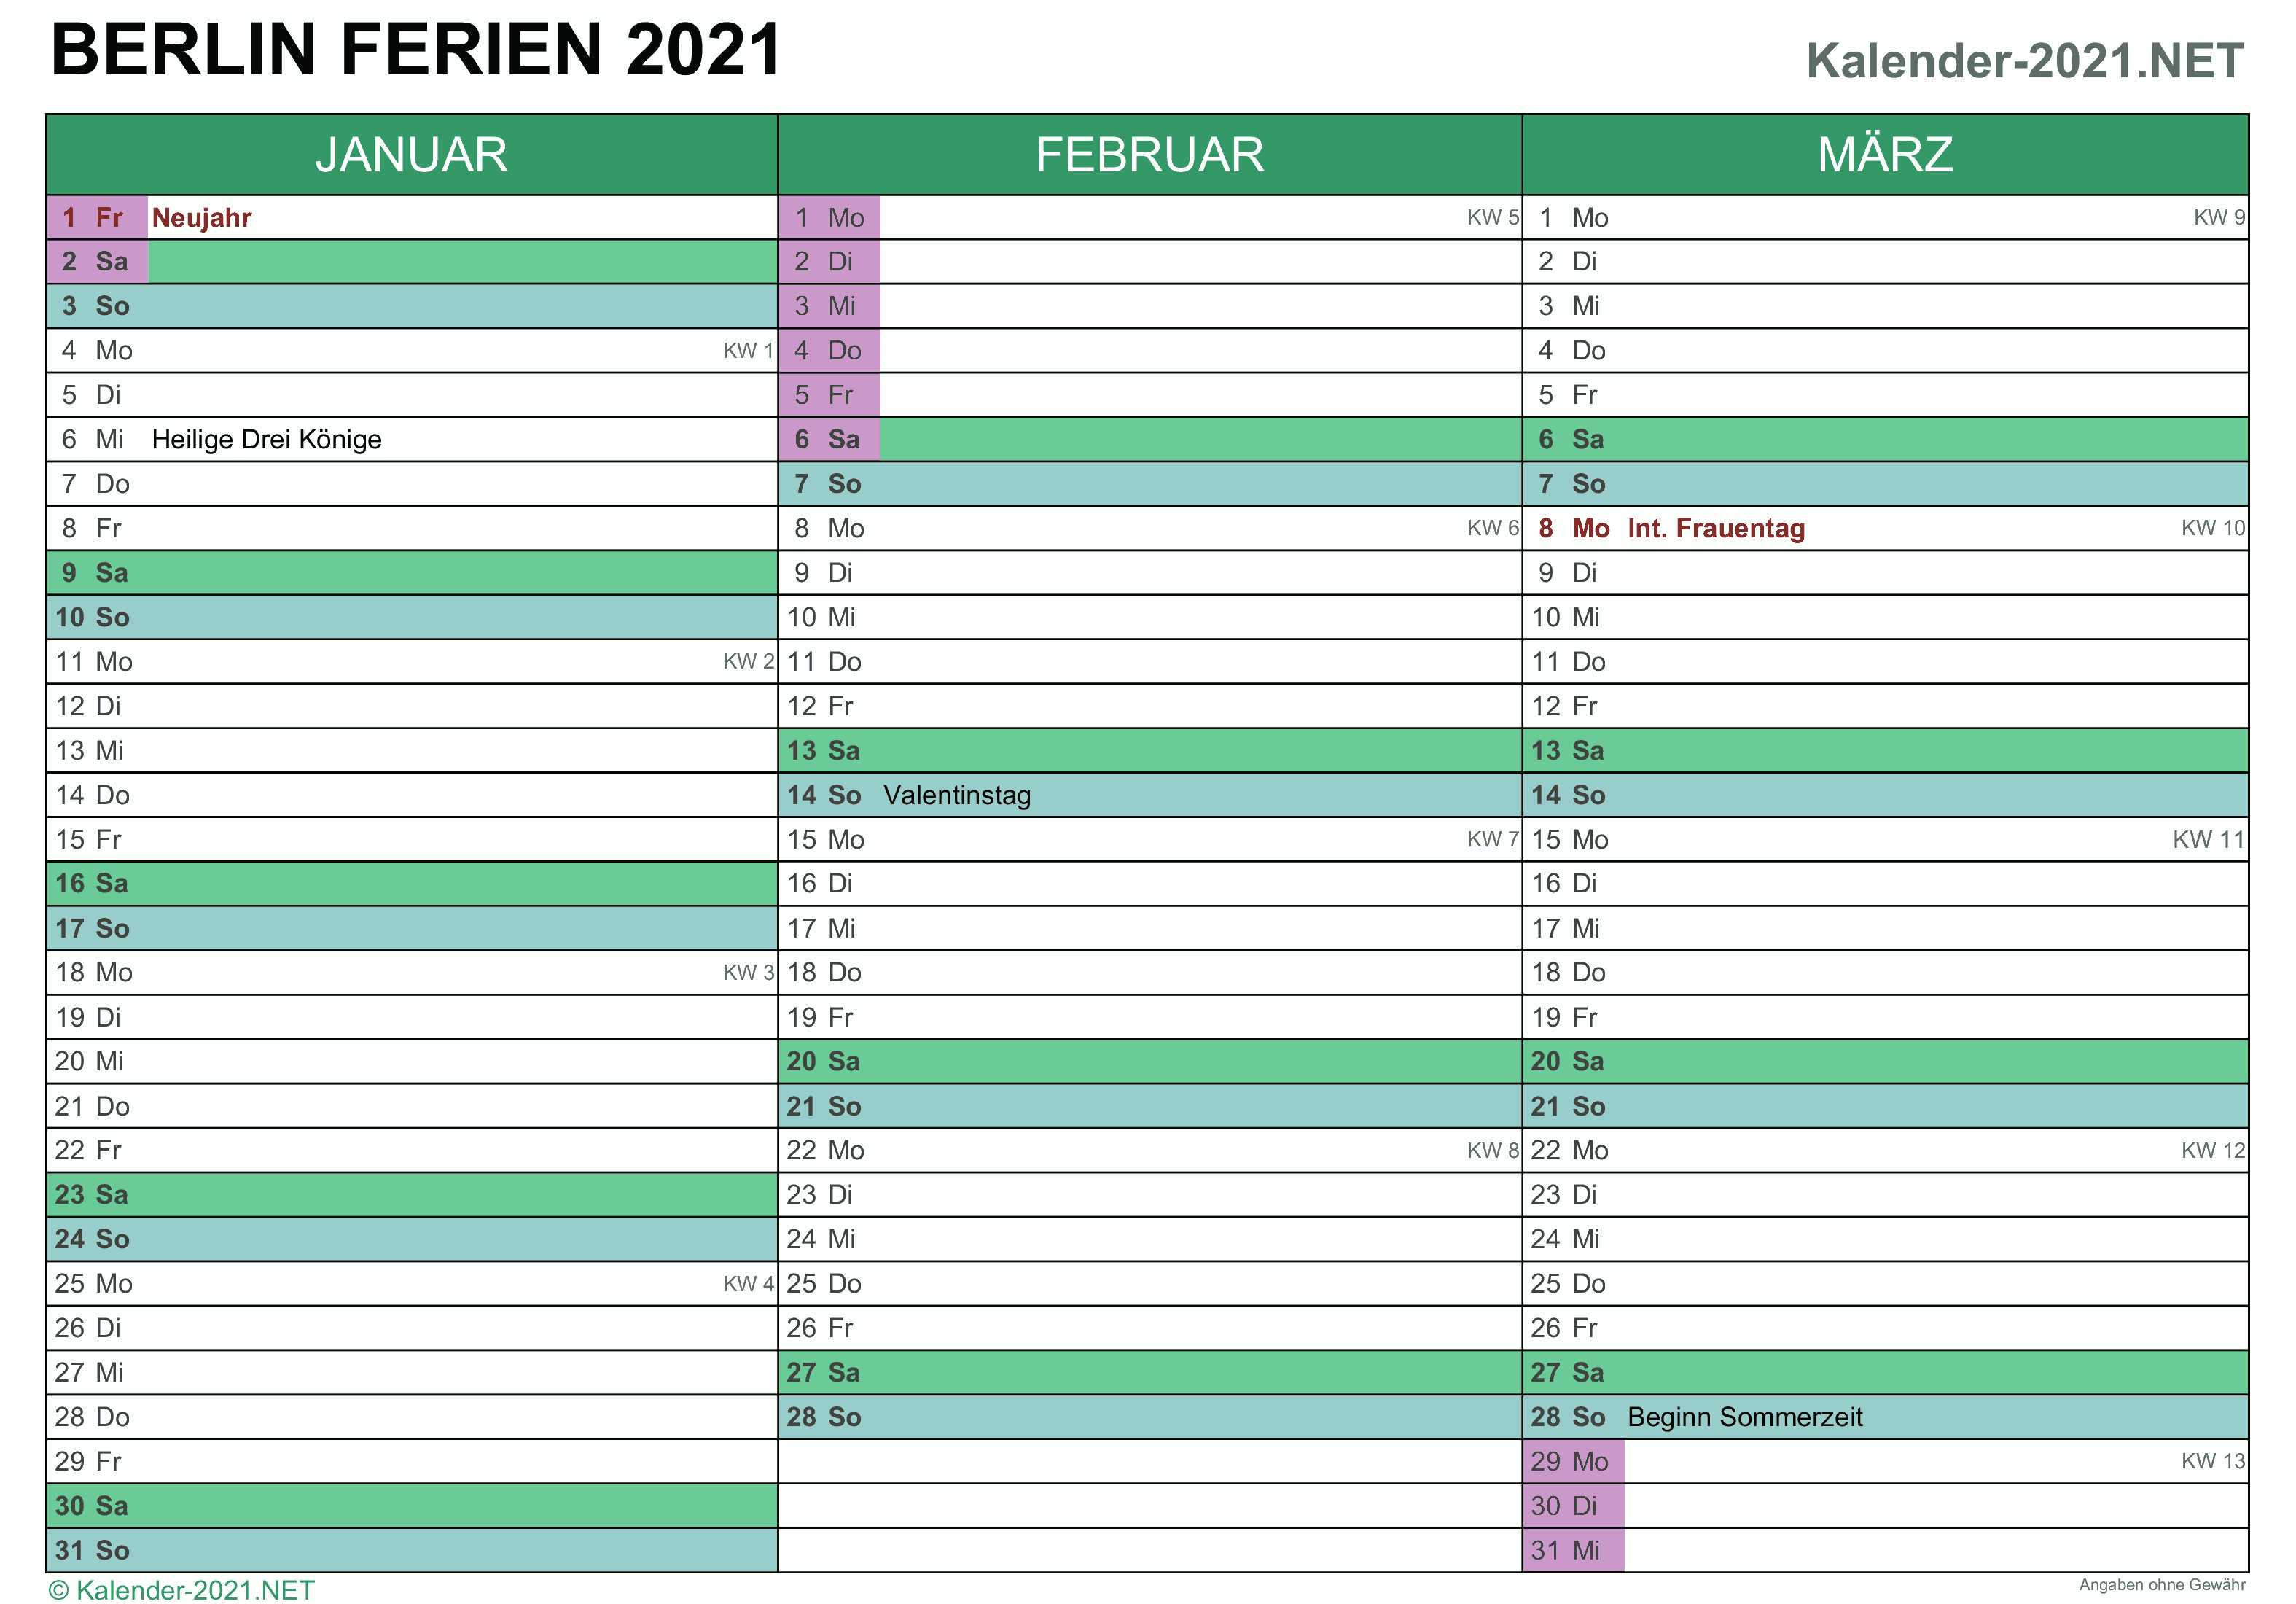 FERIEN Berlin 2021 - Ferienkalender & Übersicht